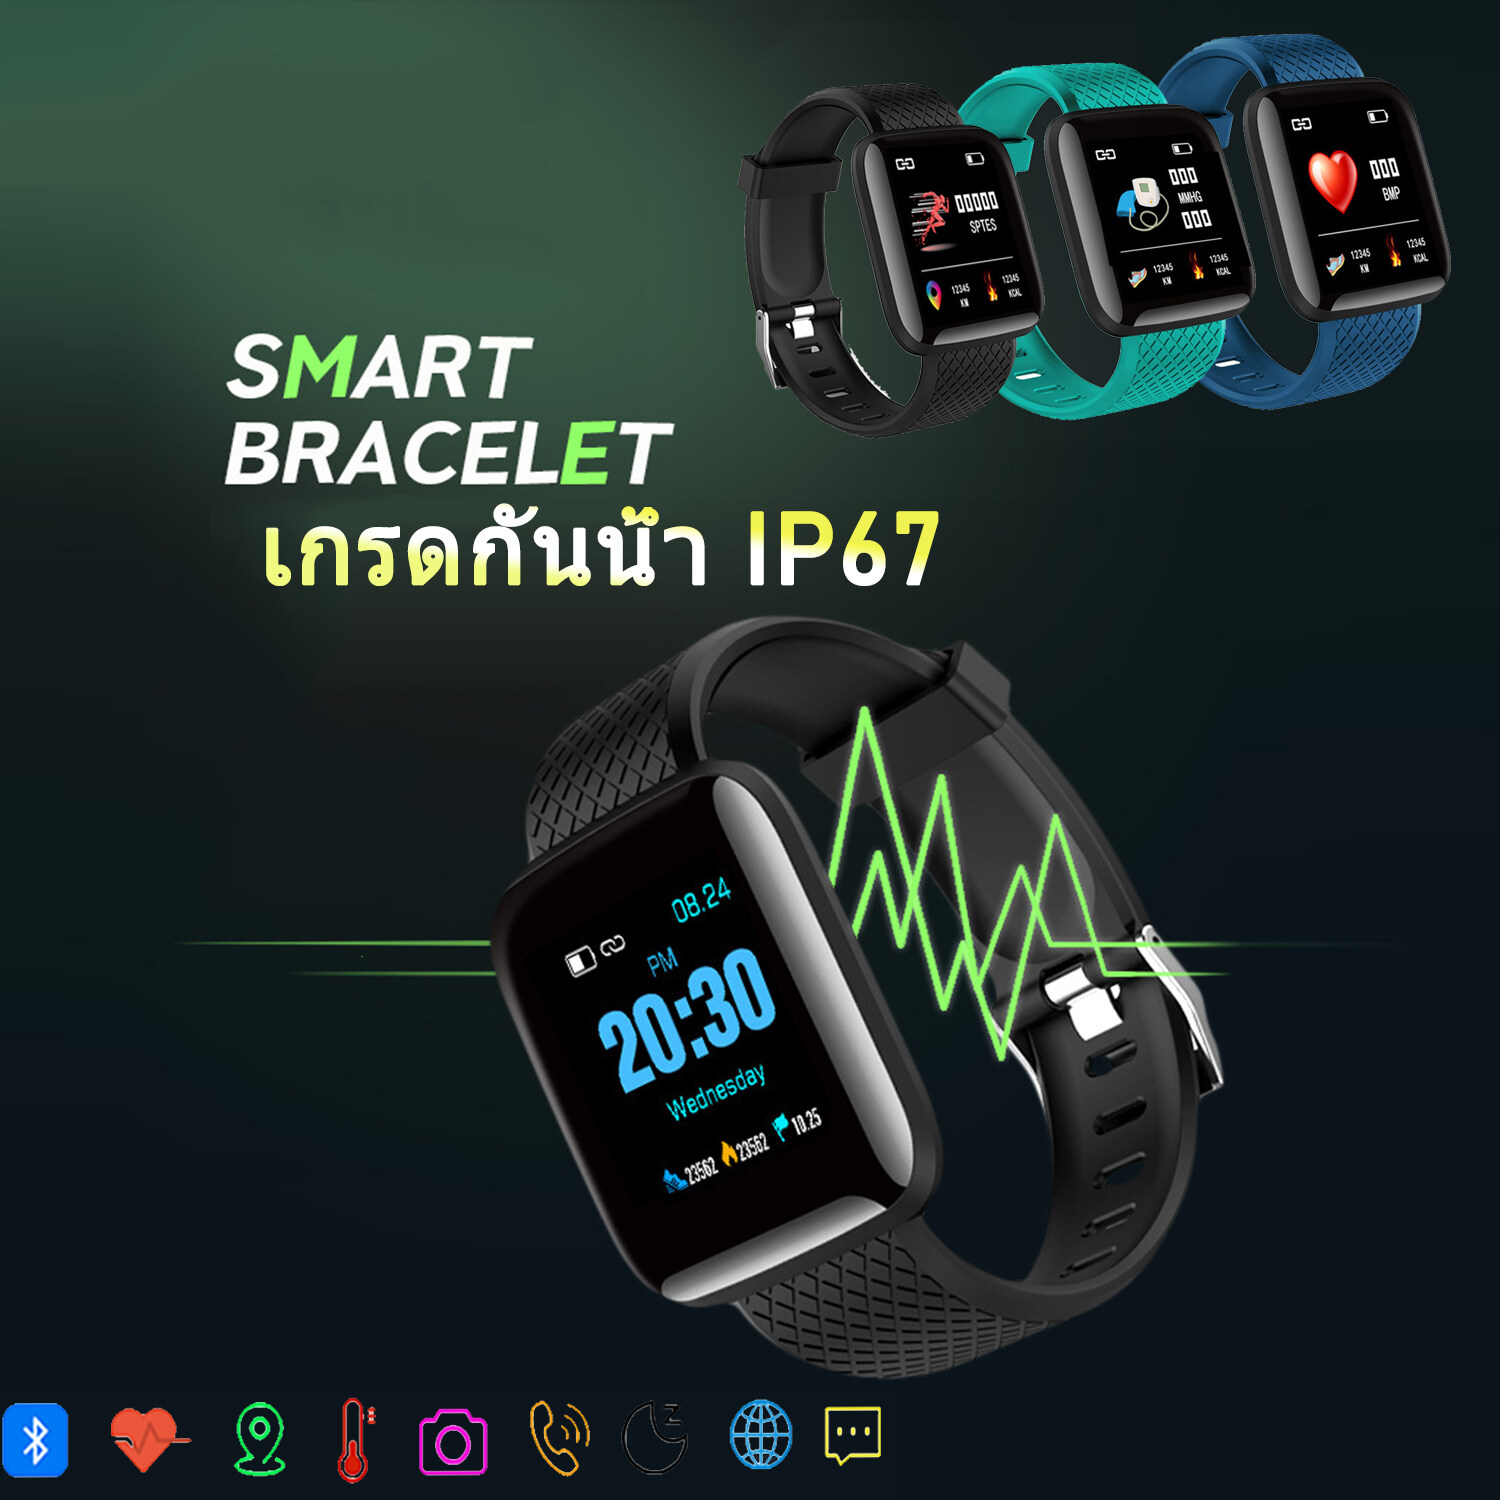 smartwatch นาฬิกาโทรได้2021 มัลติฟังก์ชั่น นาฬิกาโทรได้ สมาร์ทวอทช์ กันน้ำ smartwatch จอใหญ่ นาฬิกาสมาทวอช สมาร์ทวอทช์แท้ การตรวจจับการนอนหลับ สามารถถ่ายภาพ มาทวอช ลำโพงในตัวนาฬั๊กาส นาฬิกานับก้าว ทัชสกรีน สมาร์ทวอทช์